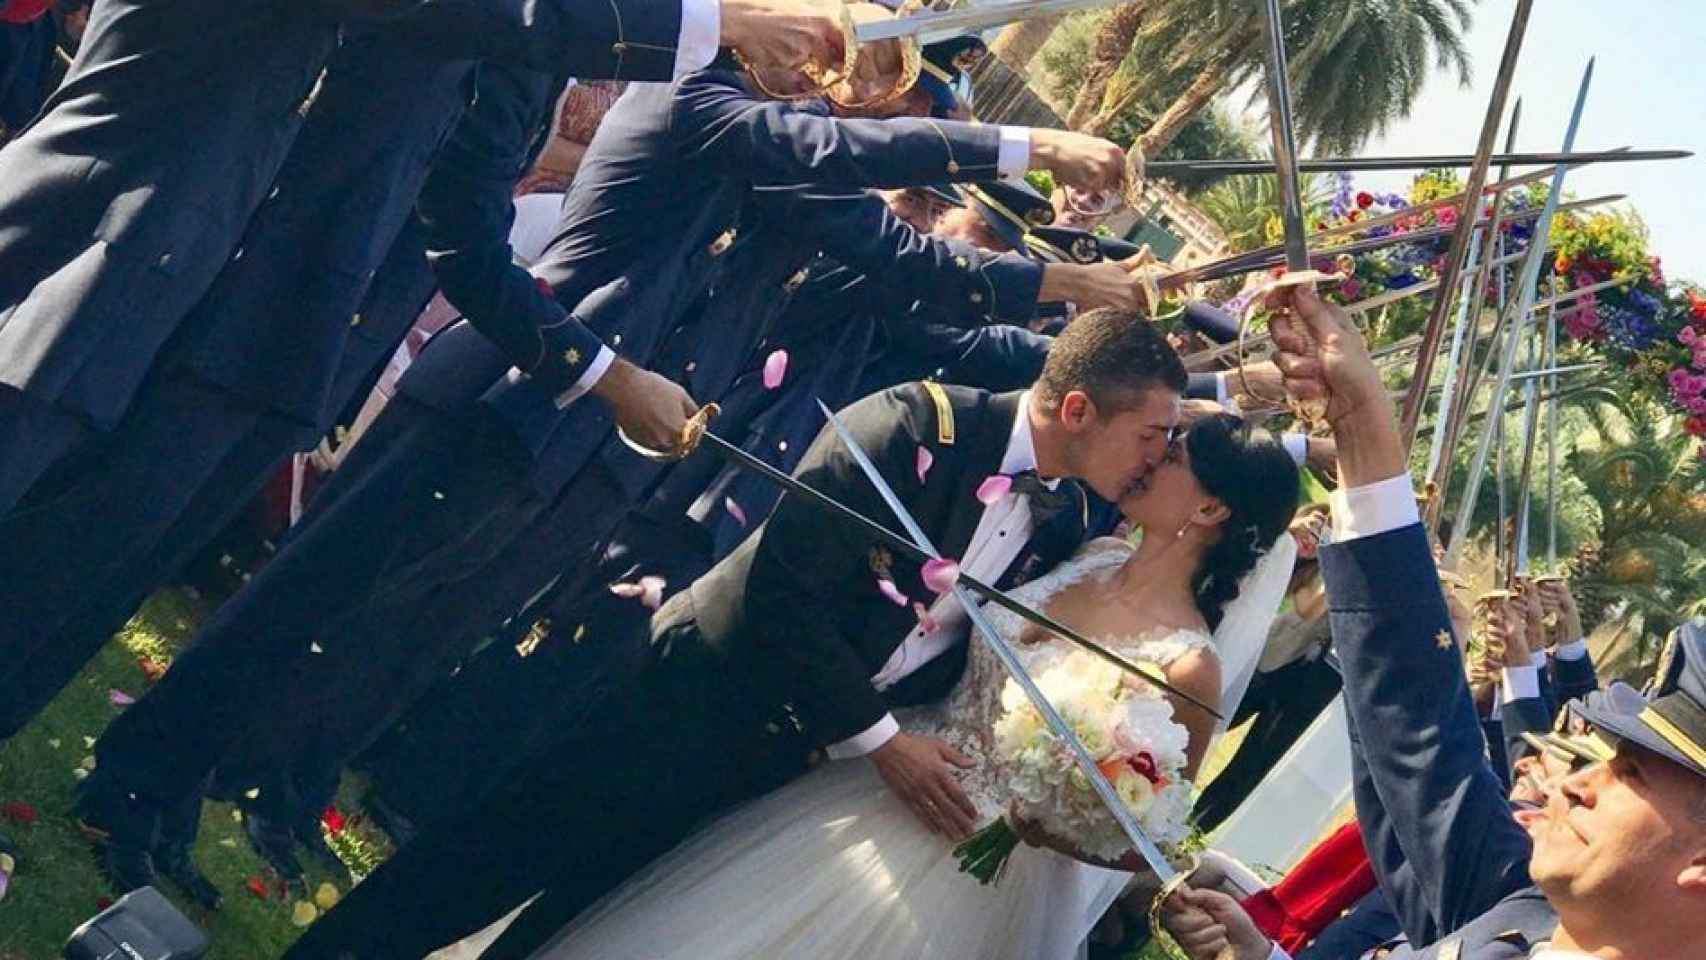 La boda entre el piloto muerto en La Manga y su mujer modelo